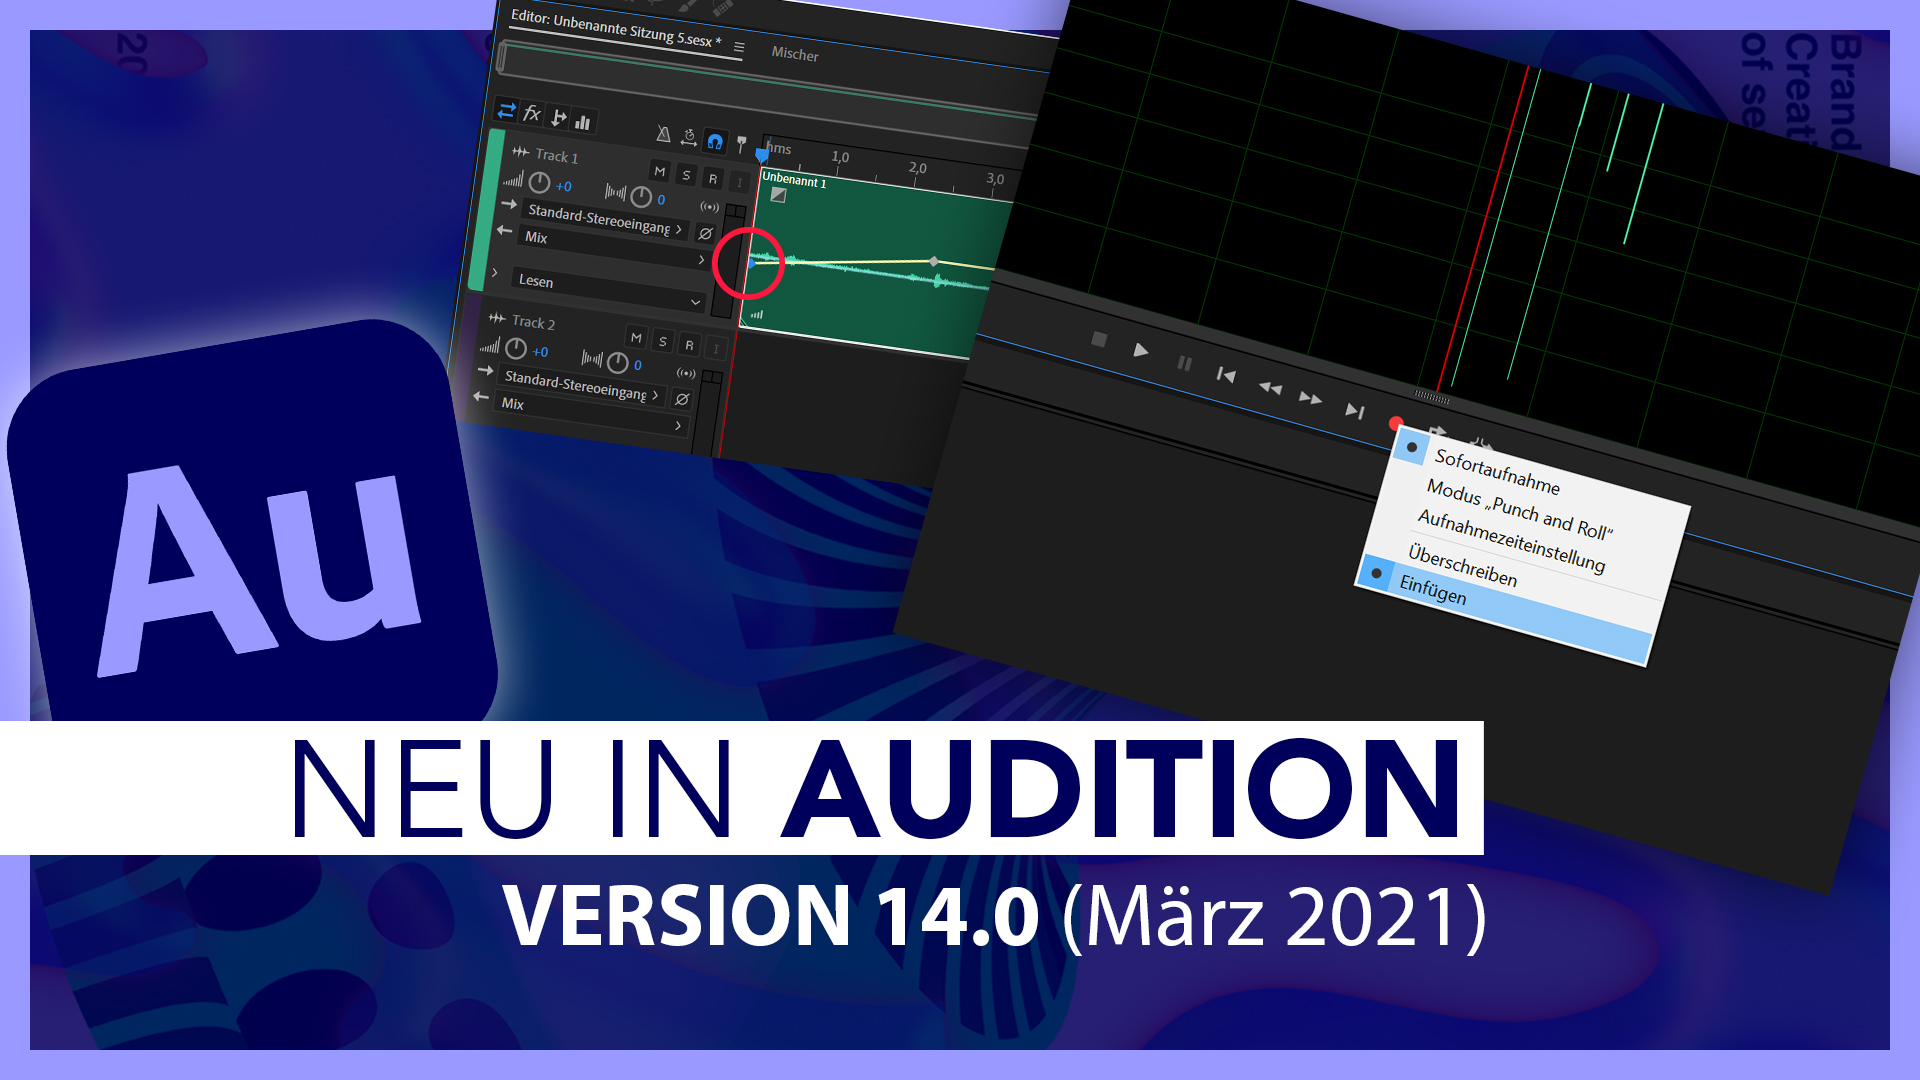 Neu in Adobe Audition V14.0 (Alle Funktionen im Überblick): Einfügenmodus beim Aufnehmen & Co.